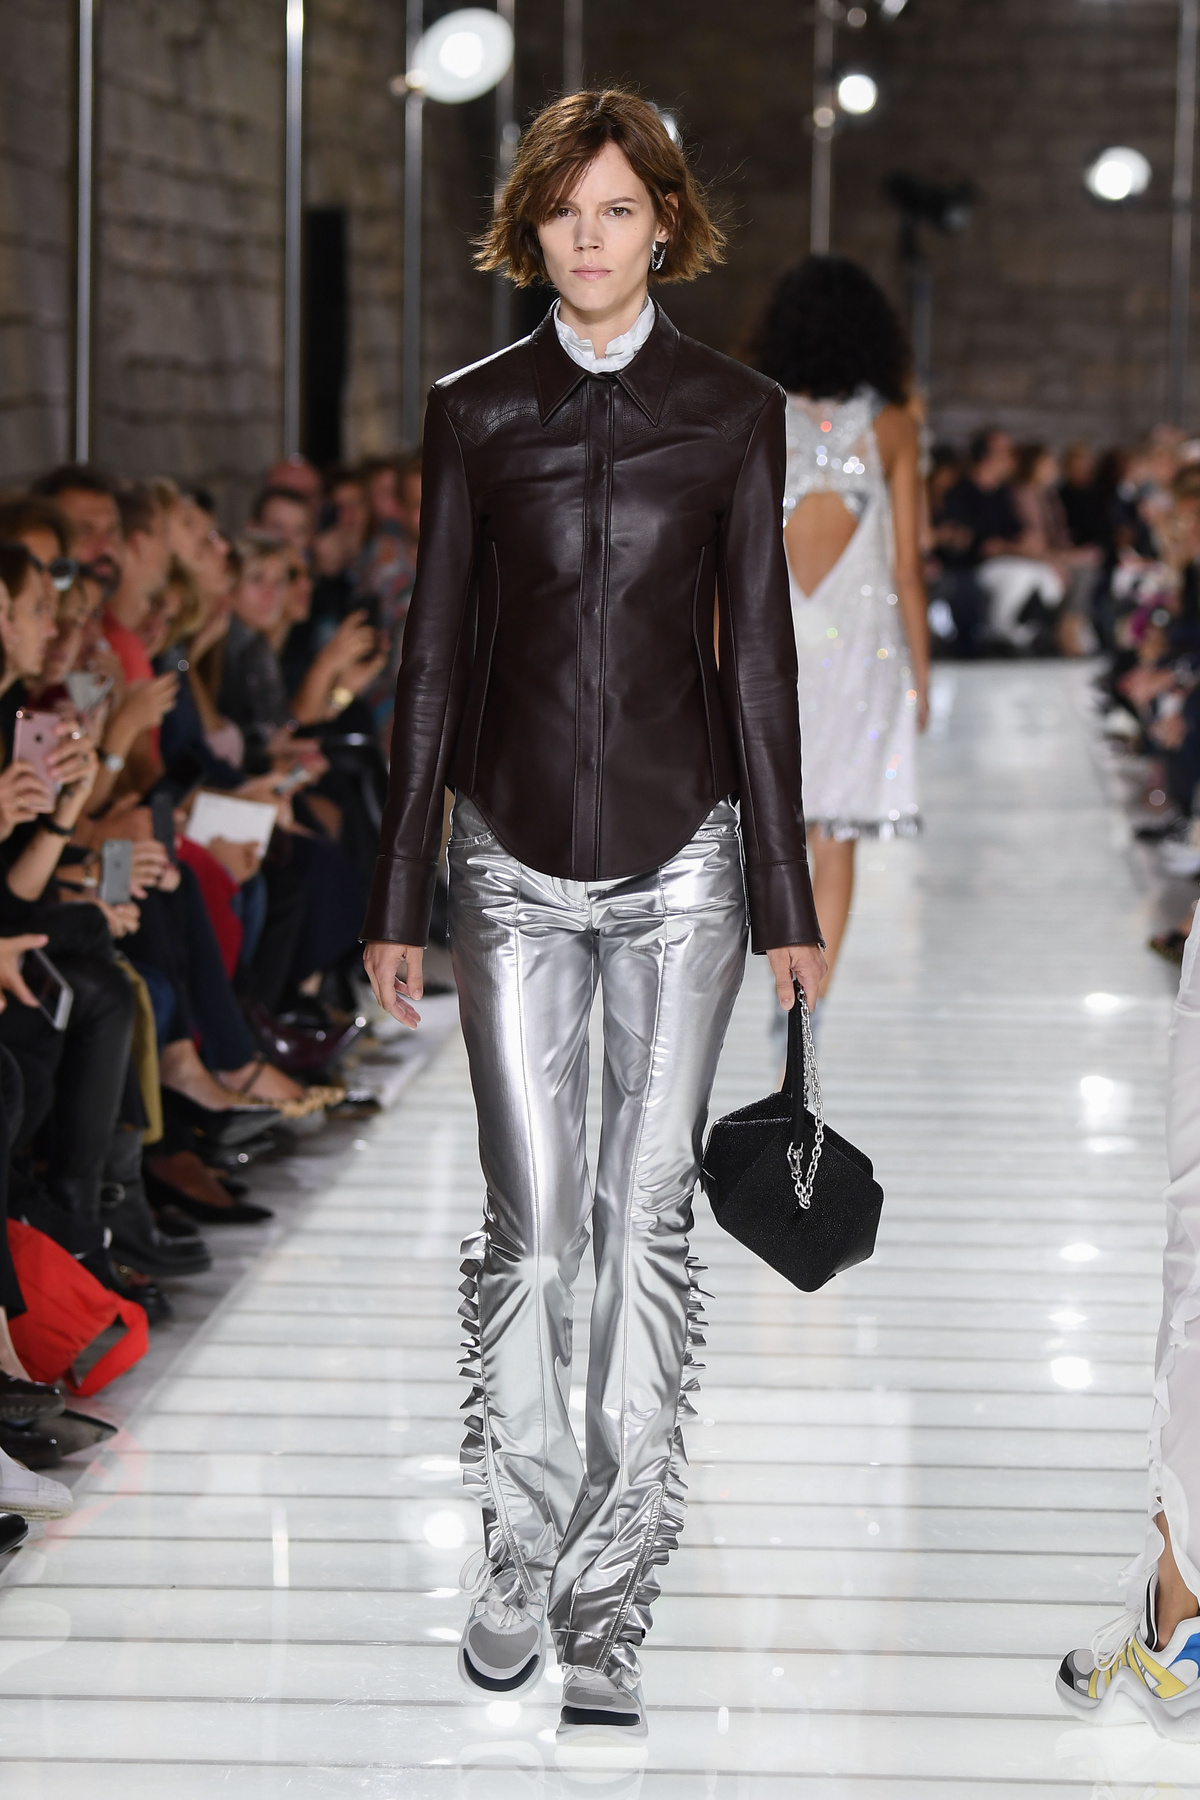 Várhatóan a fast-fashion boltokban is lesz majd hasonló ezüst nadrág a következő szezonban.